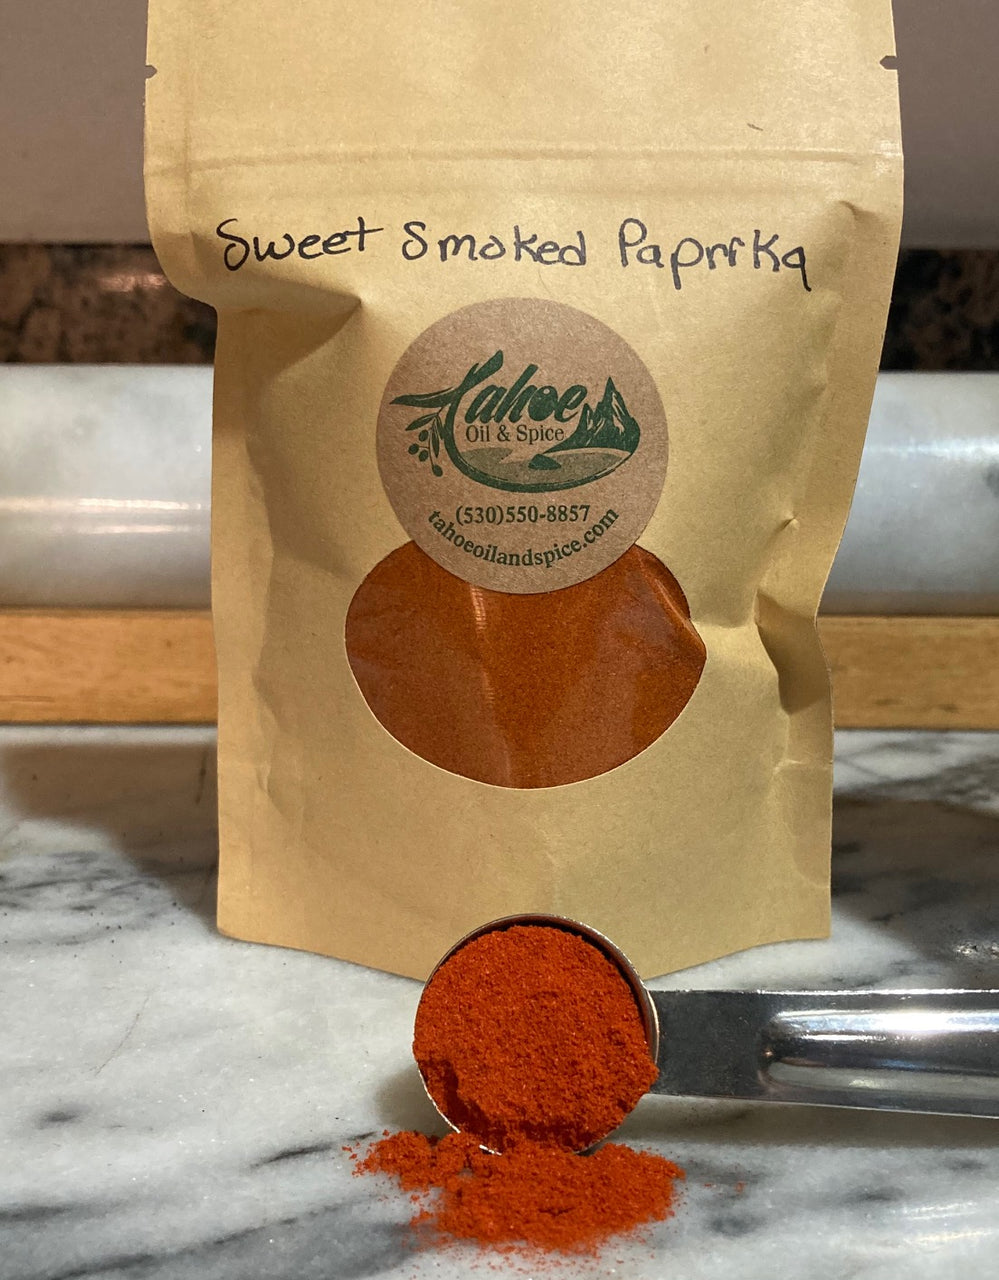 Sweet Smoked Paprika